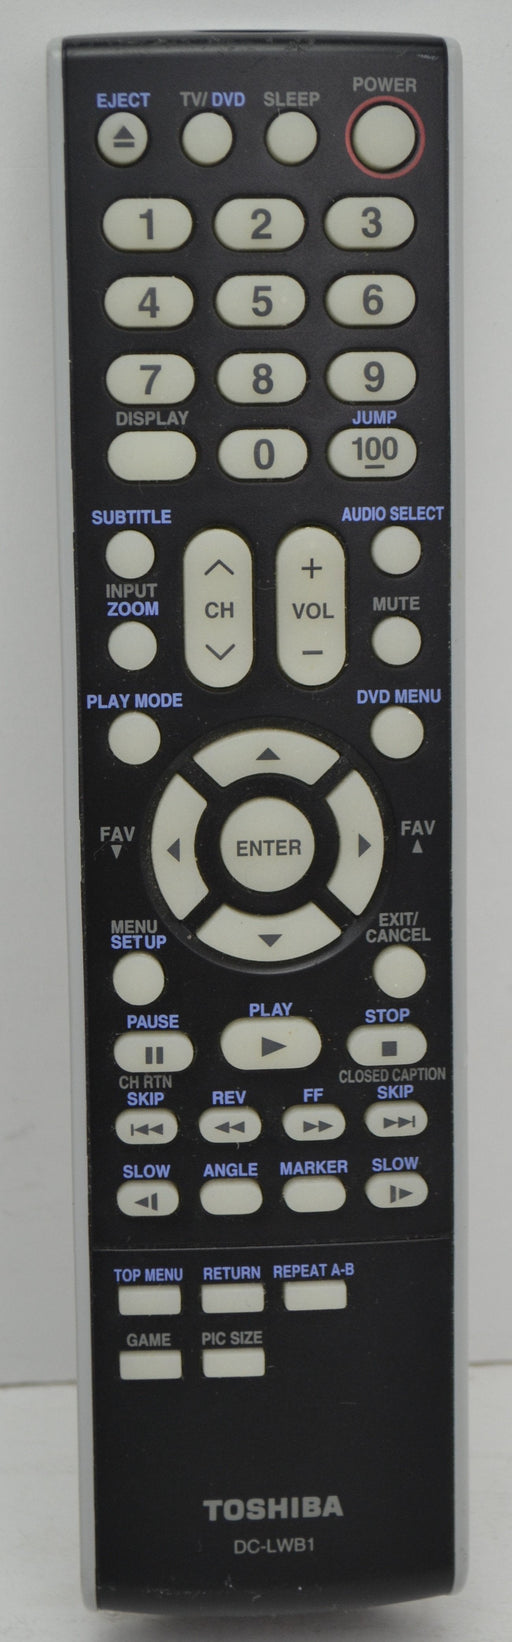 Toshiba - DC-LWB1 - DVD 26HL47
26HL67
26HL47
32LV67
42LZ196
65HM117 Remote Control-Remote-SpenCertified-refurbished-vintage-electonics